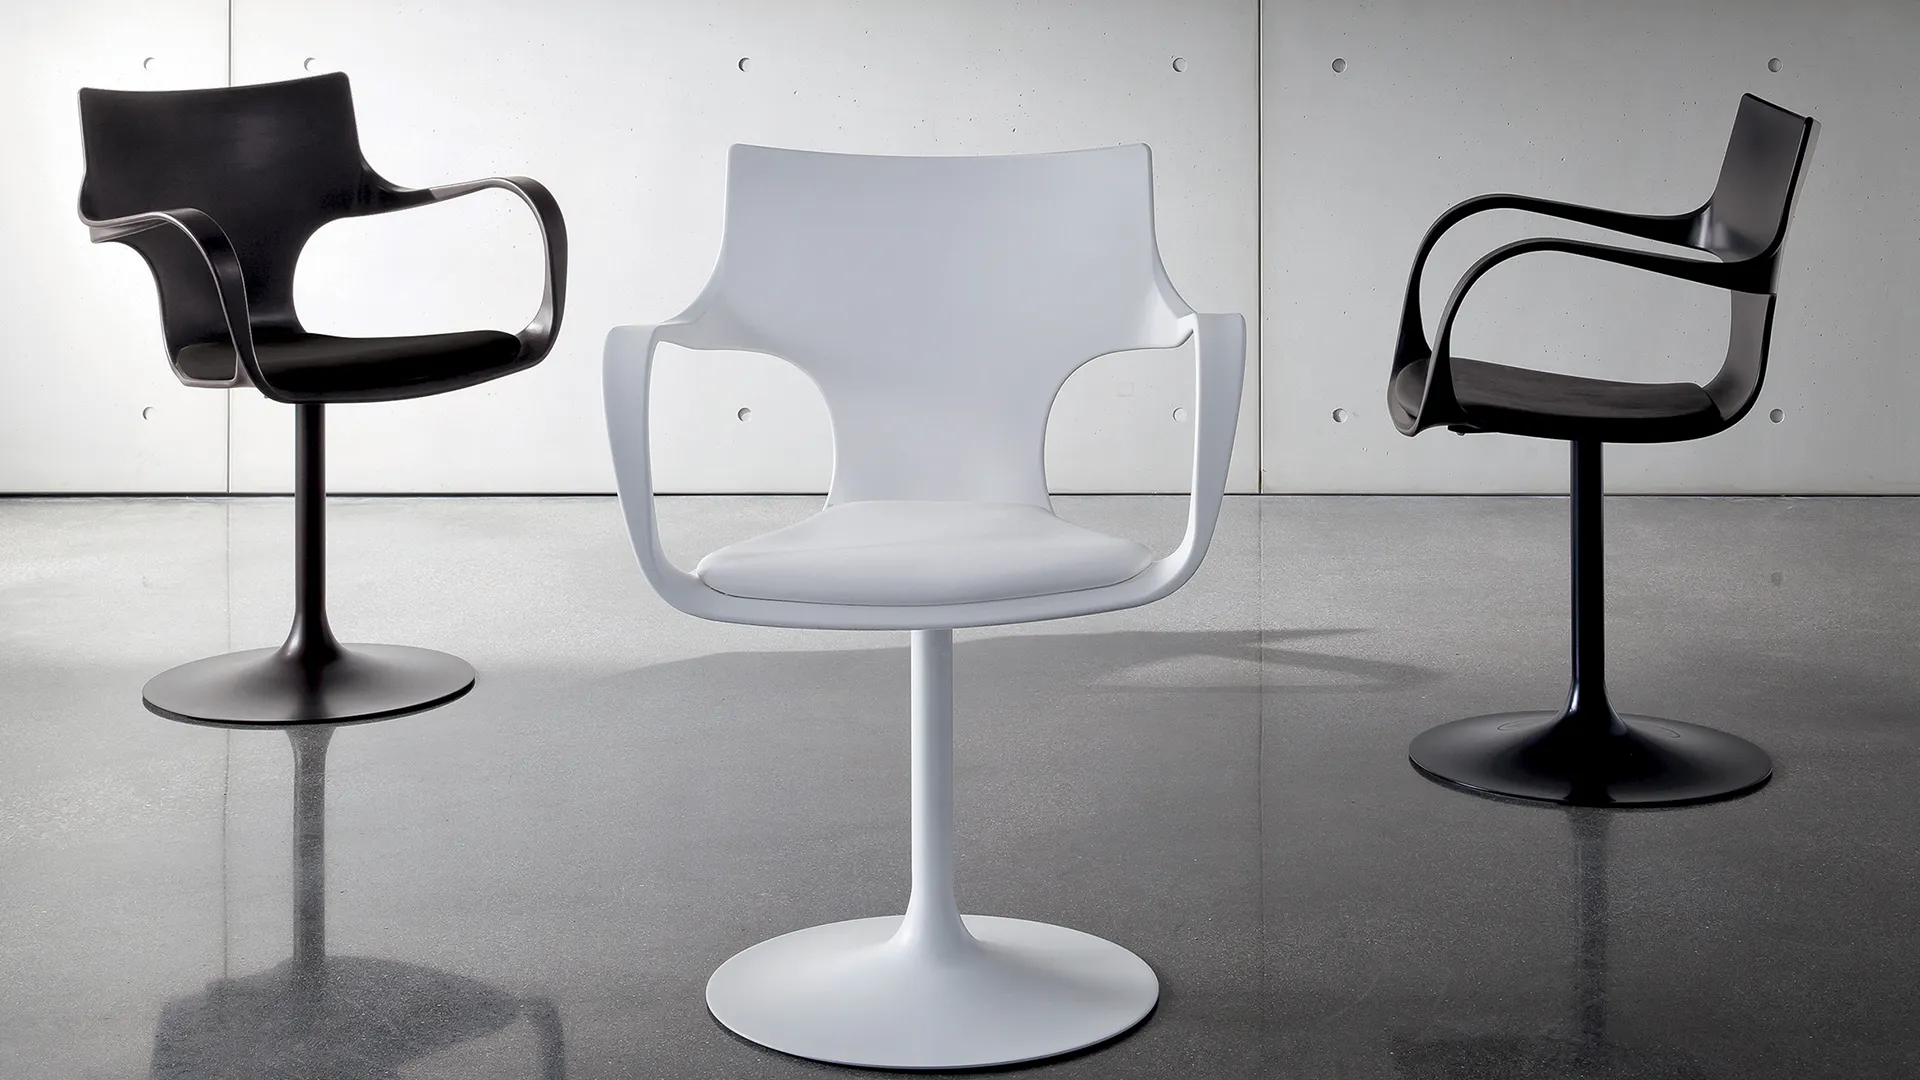 Sedia girevole con braccioli centrale, struttura in metallo laccato bianco e seduta rivestita in ecopelle bianco. Lateralmente sedie con struttura e s